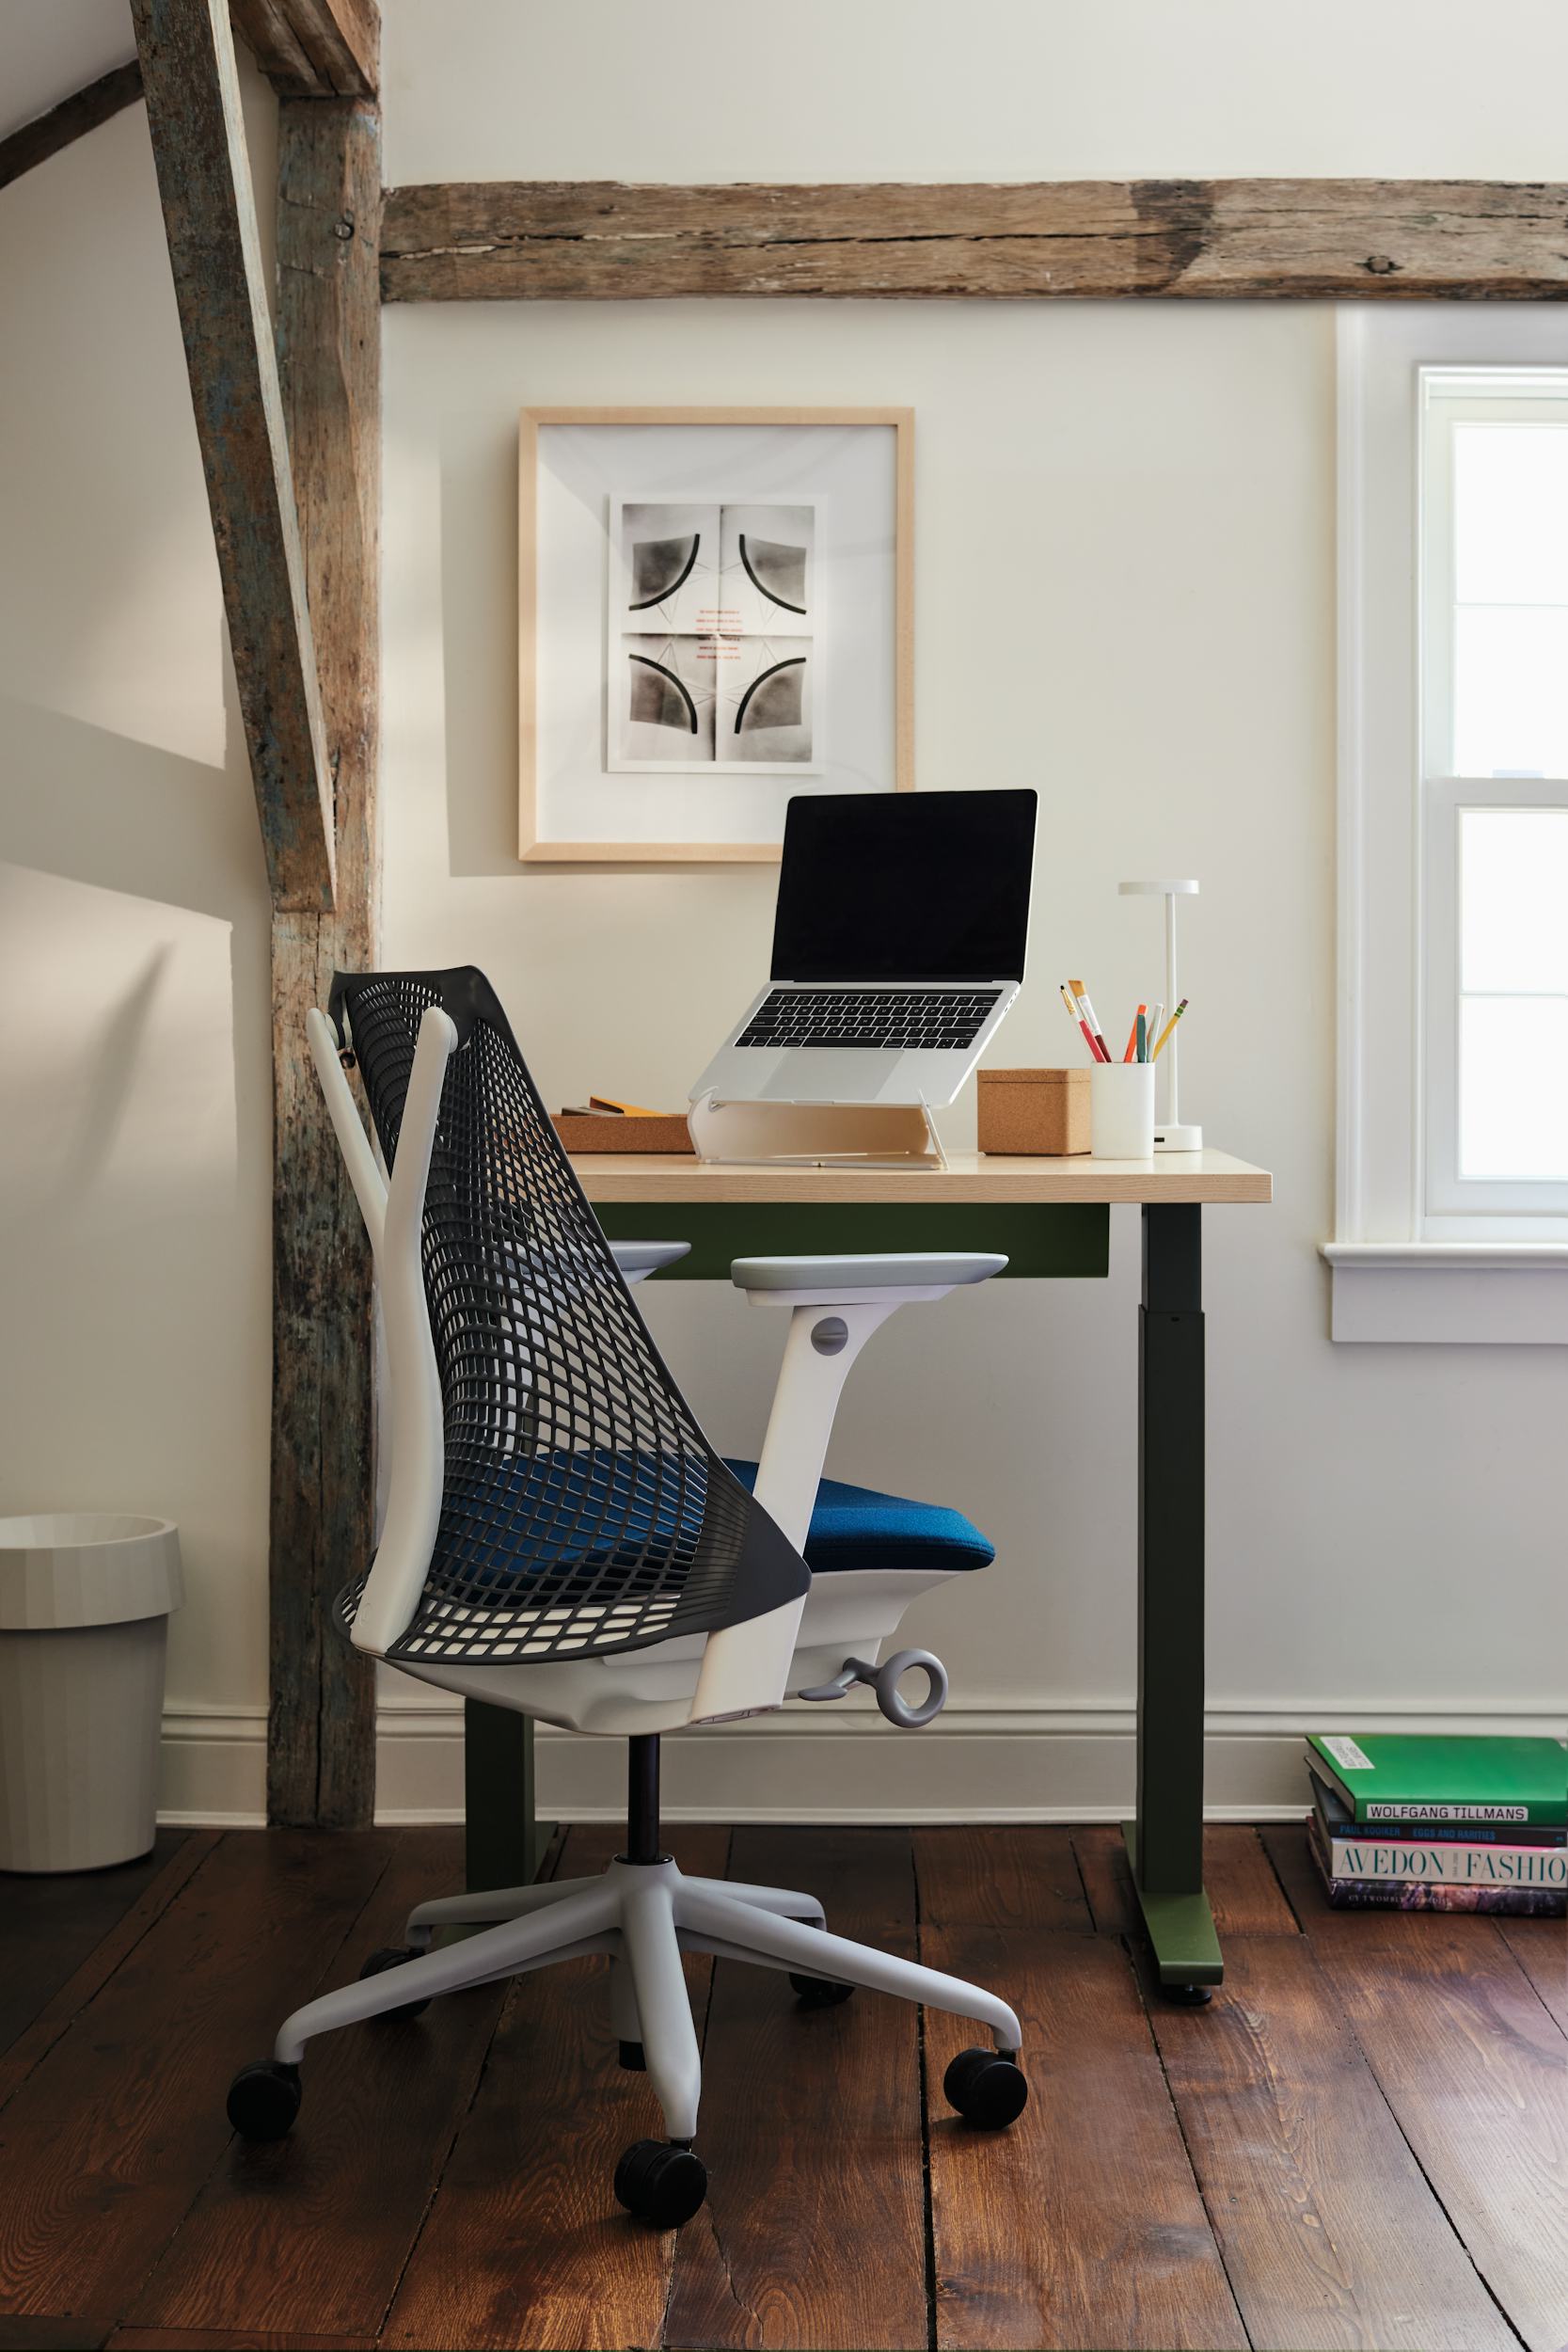 Used Herman Miller Aeron Chair - Smart Buy Office Furniture: Office  Furniture Austin - Used Office Furniture